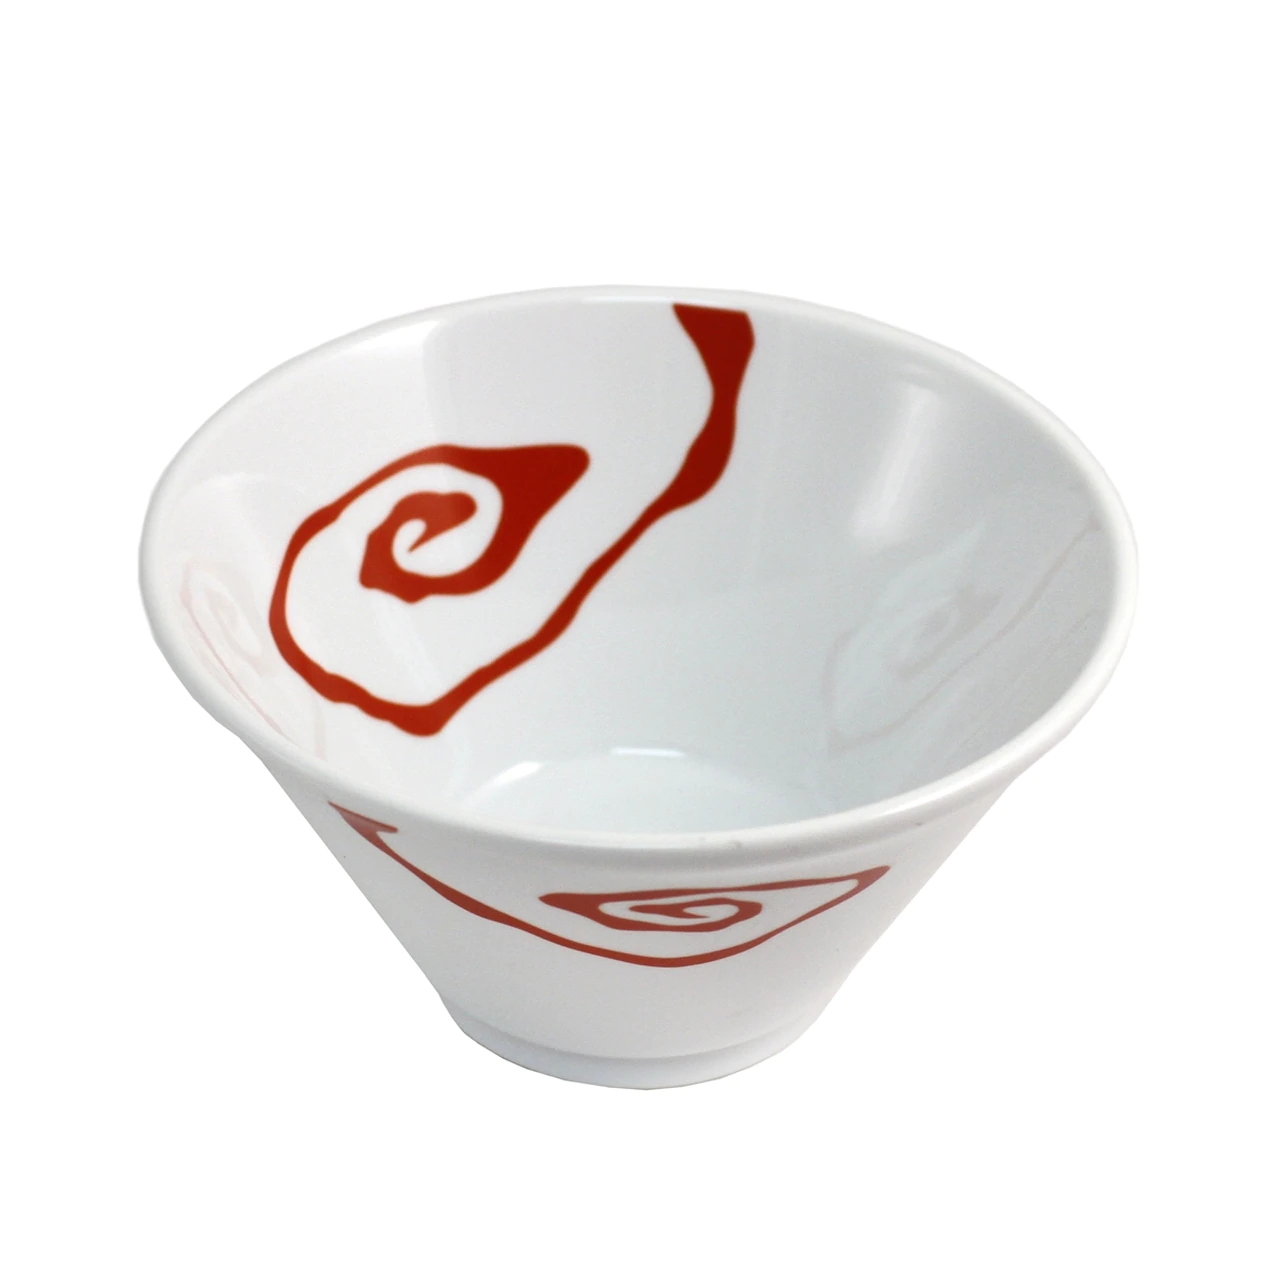 面碗 White Noodle Bowl with Red Design 41 fl oz / 7.5" dia【日本进口】